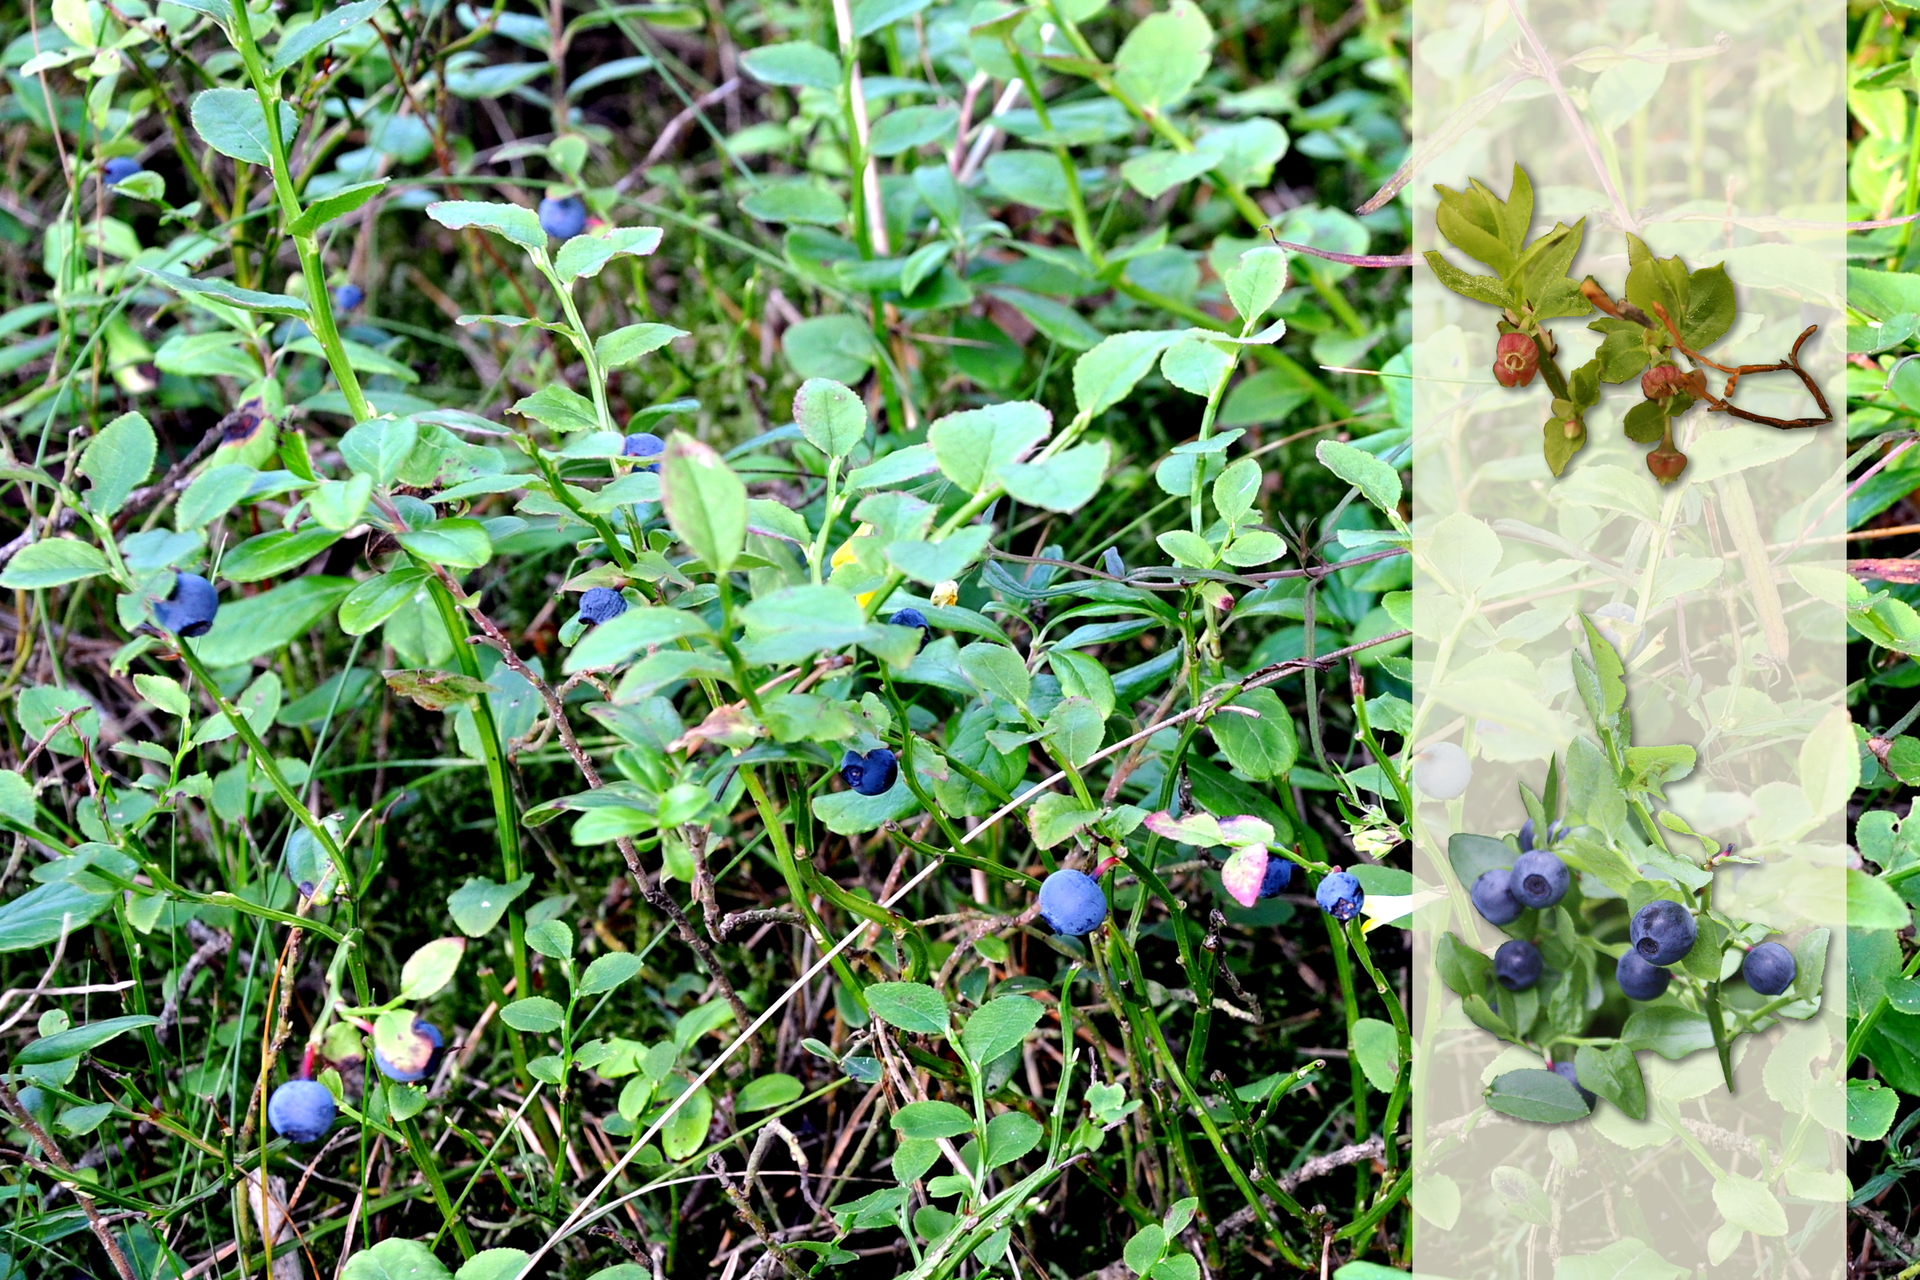 Fotografia przedstawia niskie krzewinki borówki czarnej w lesie. Na ich gałązkach znajdują się ciemnoniebieskie, kuliste owoce - jagody. Po prawej nałożony jaśniejszy pasek z fotografiami. U góry gałązka z żółto zielonymi listkami i różowymi kwiatami. Poniżej gałązka z liśćmi i niebieskimi owocami.